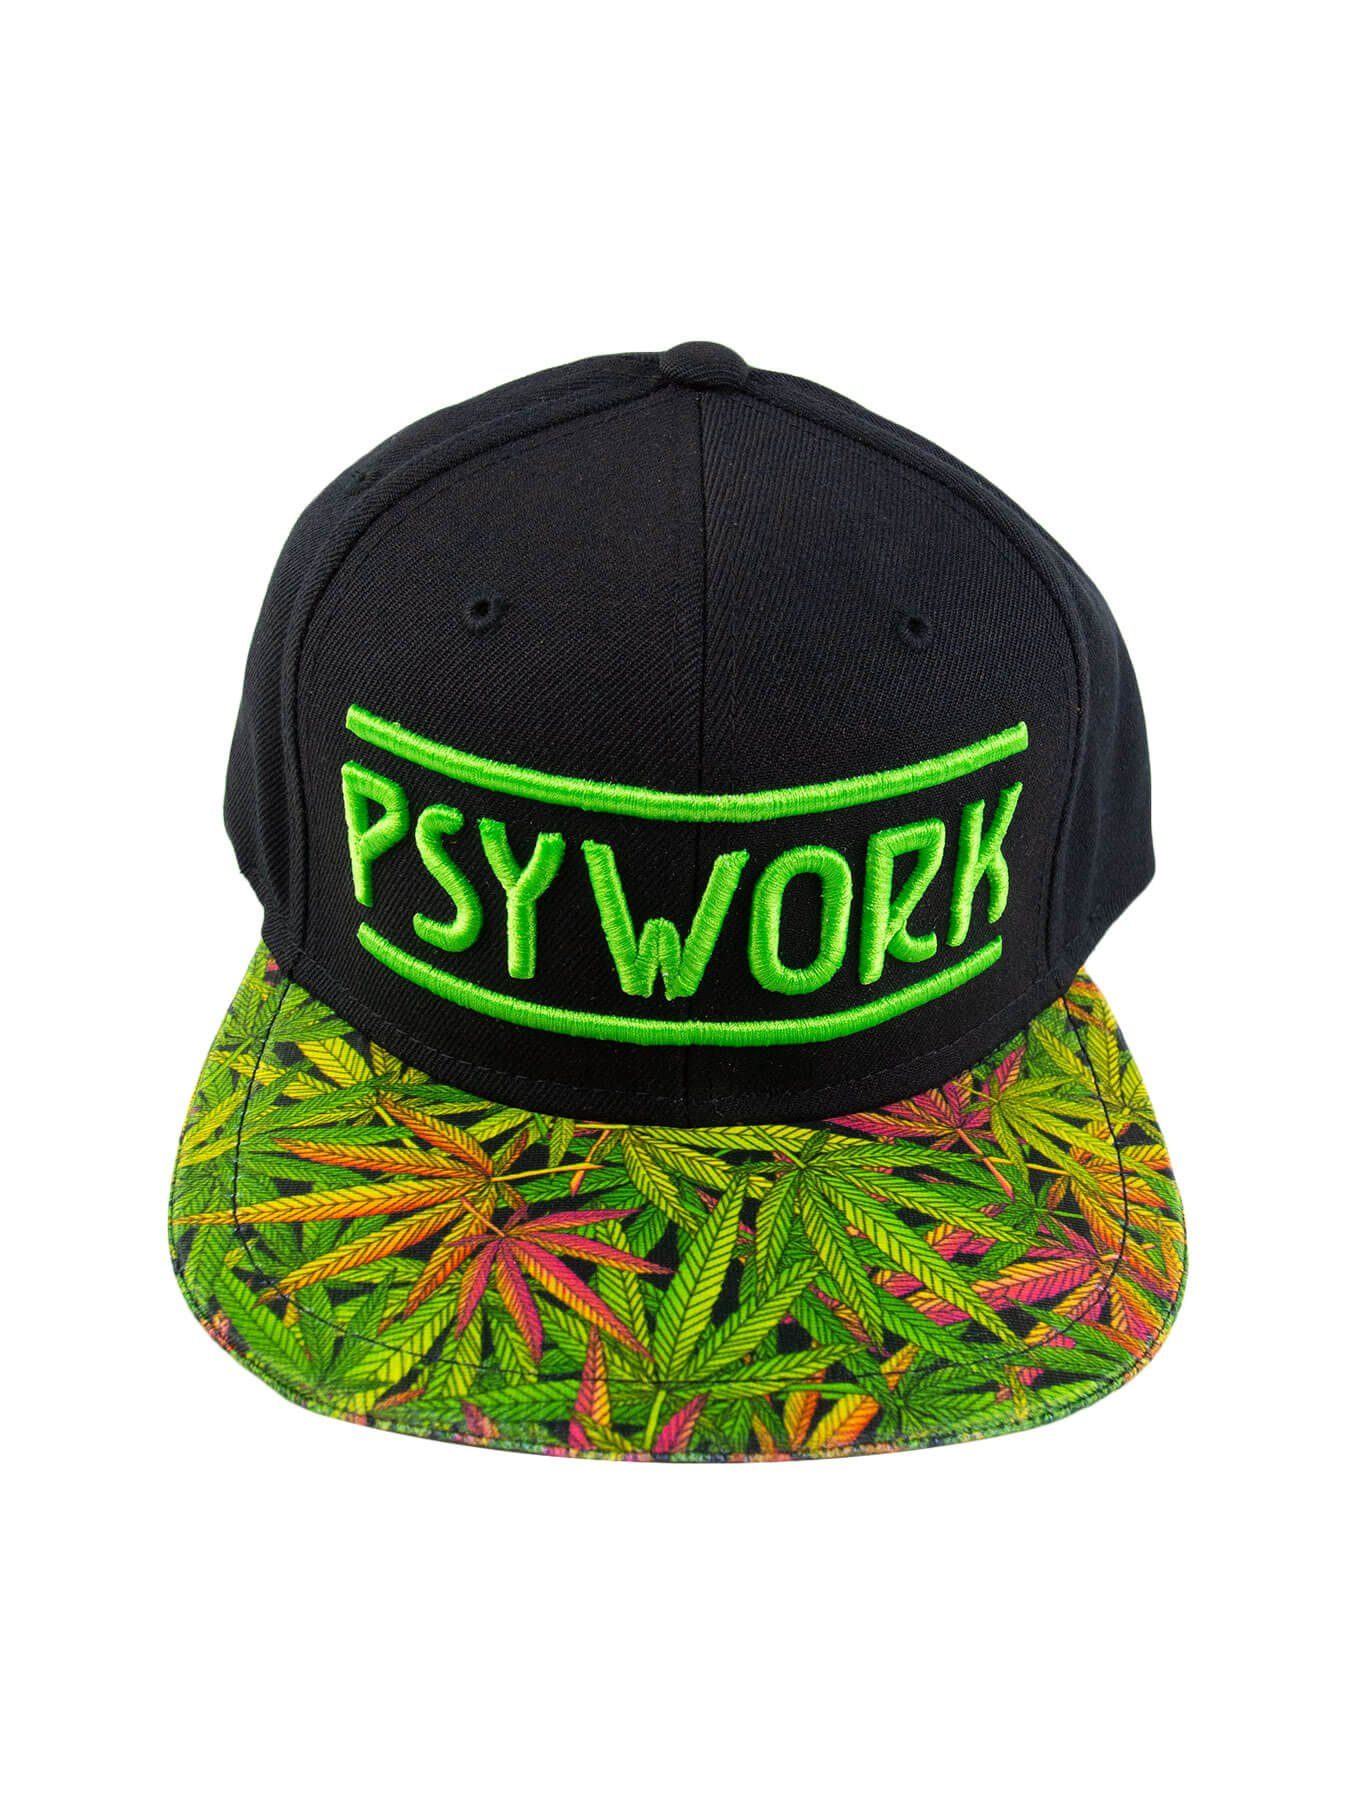 PSYWORK Snapback Cap Schwarzlicht Black Cap Neon "Funky Weed", Grün UV-aktiv, leuchtet unter Schwarzlicht | Snapback Caps